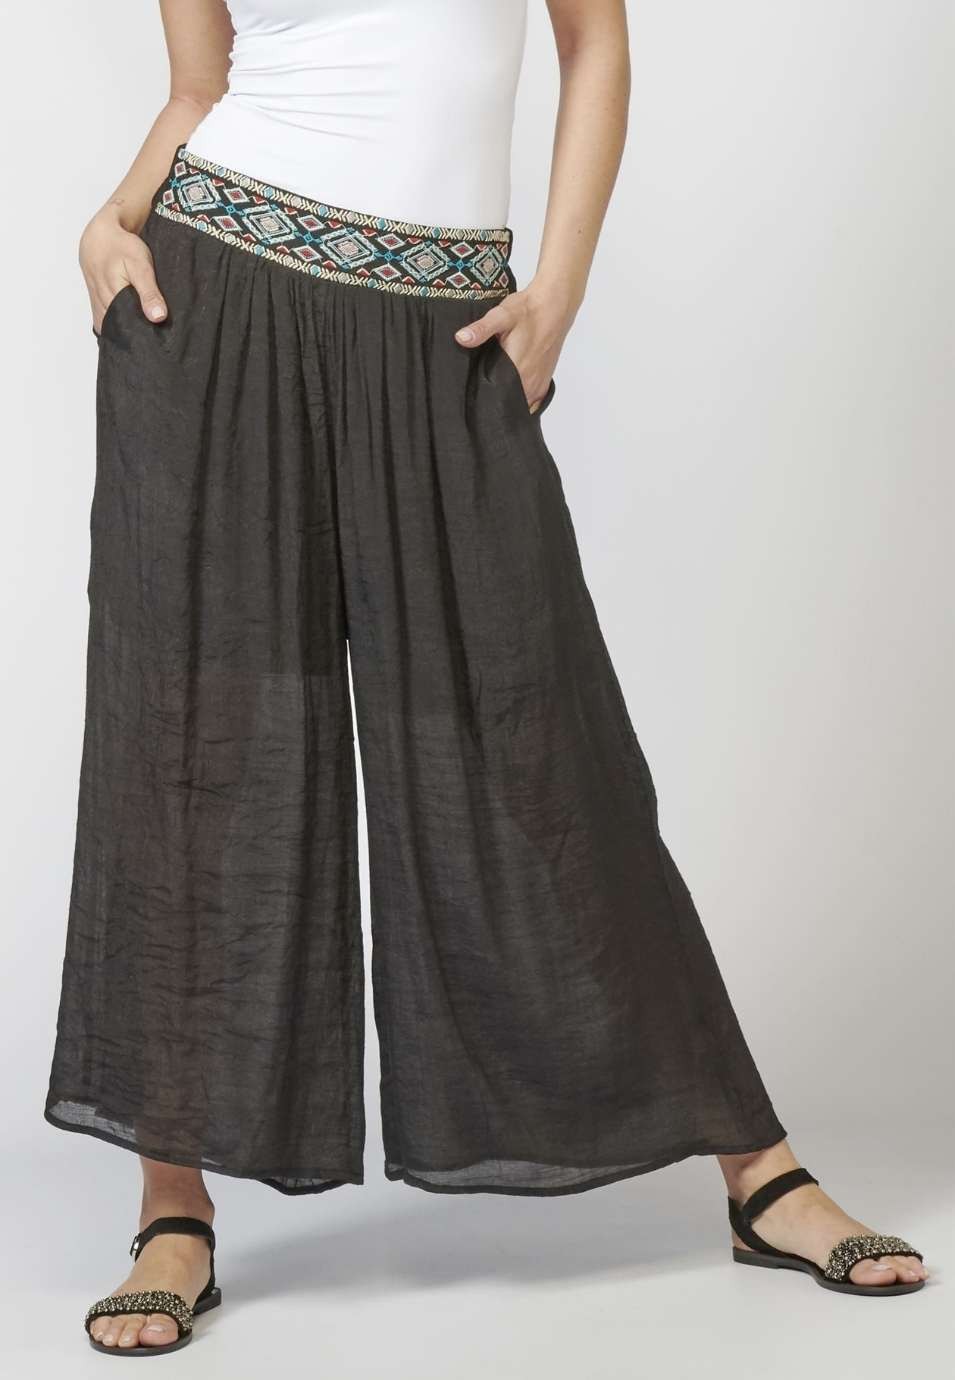 Pantalon long élastique pour femme avec ceinture et détail brodé ethnique de couleur noire 3